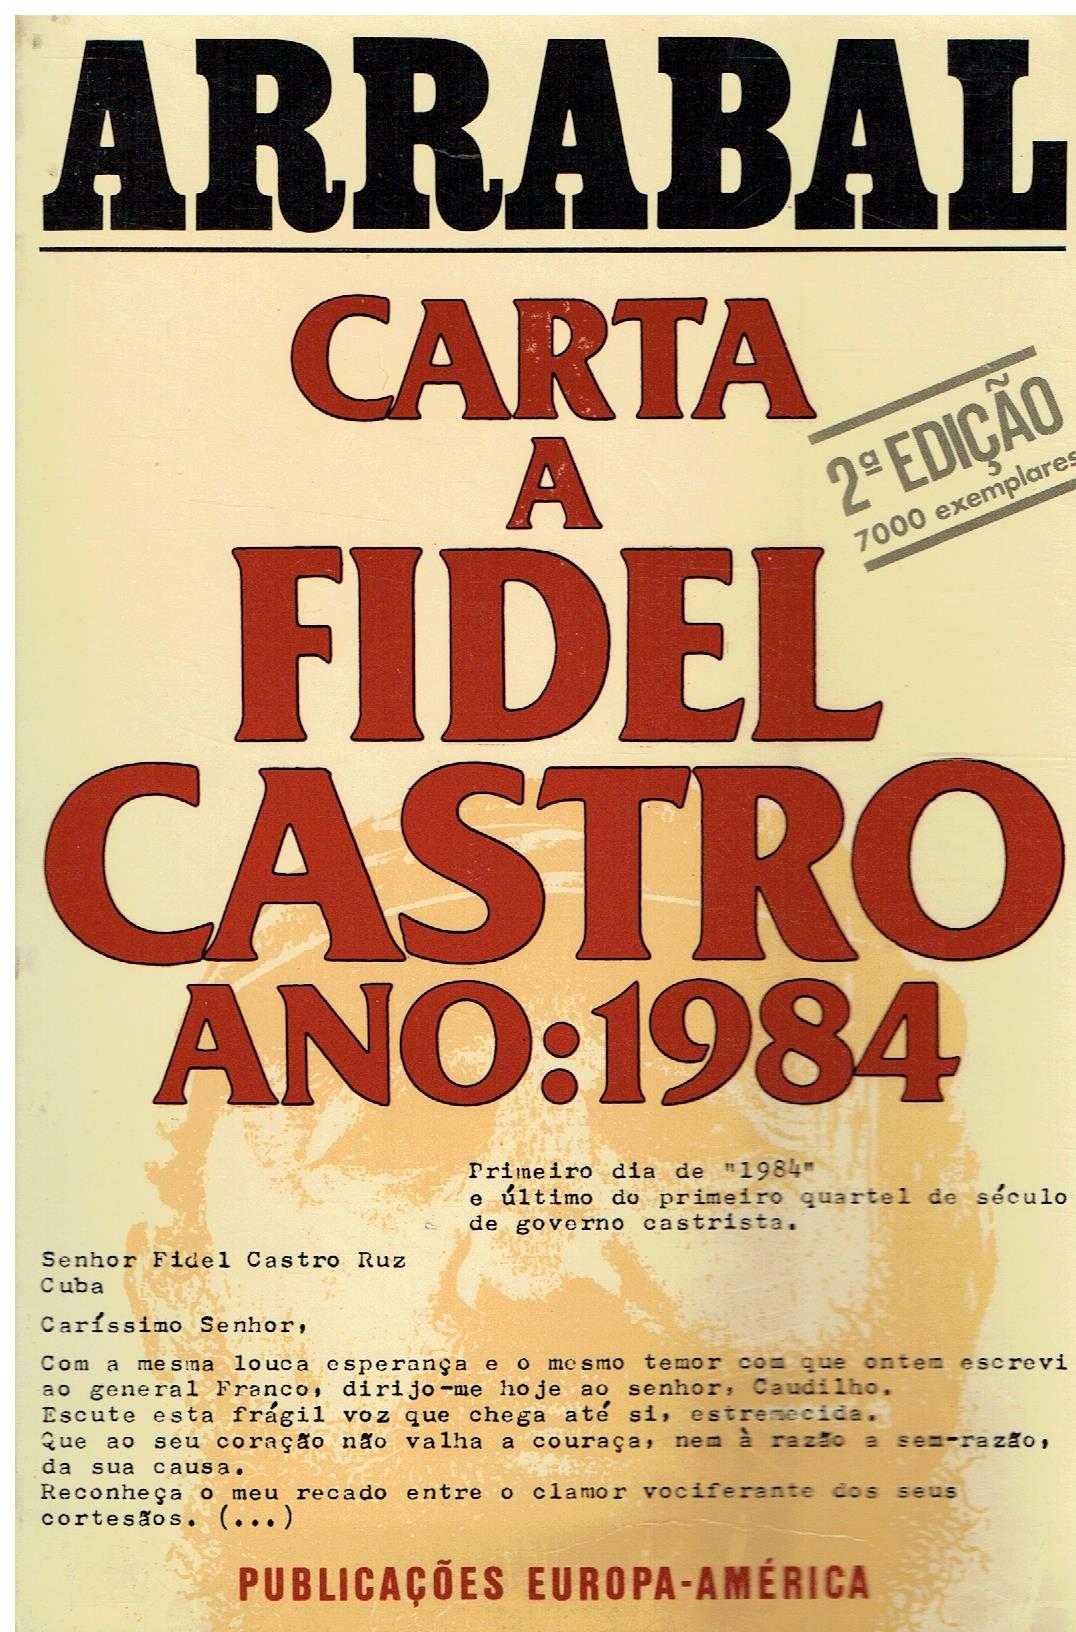 11968

Carta a Fidel Castro 1984
de Arrabal